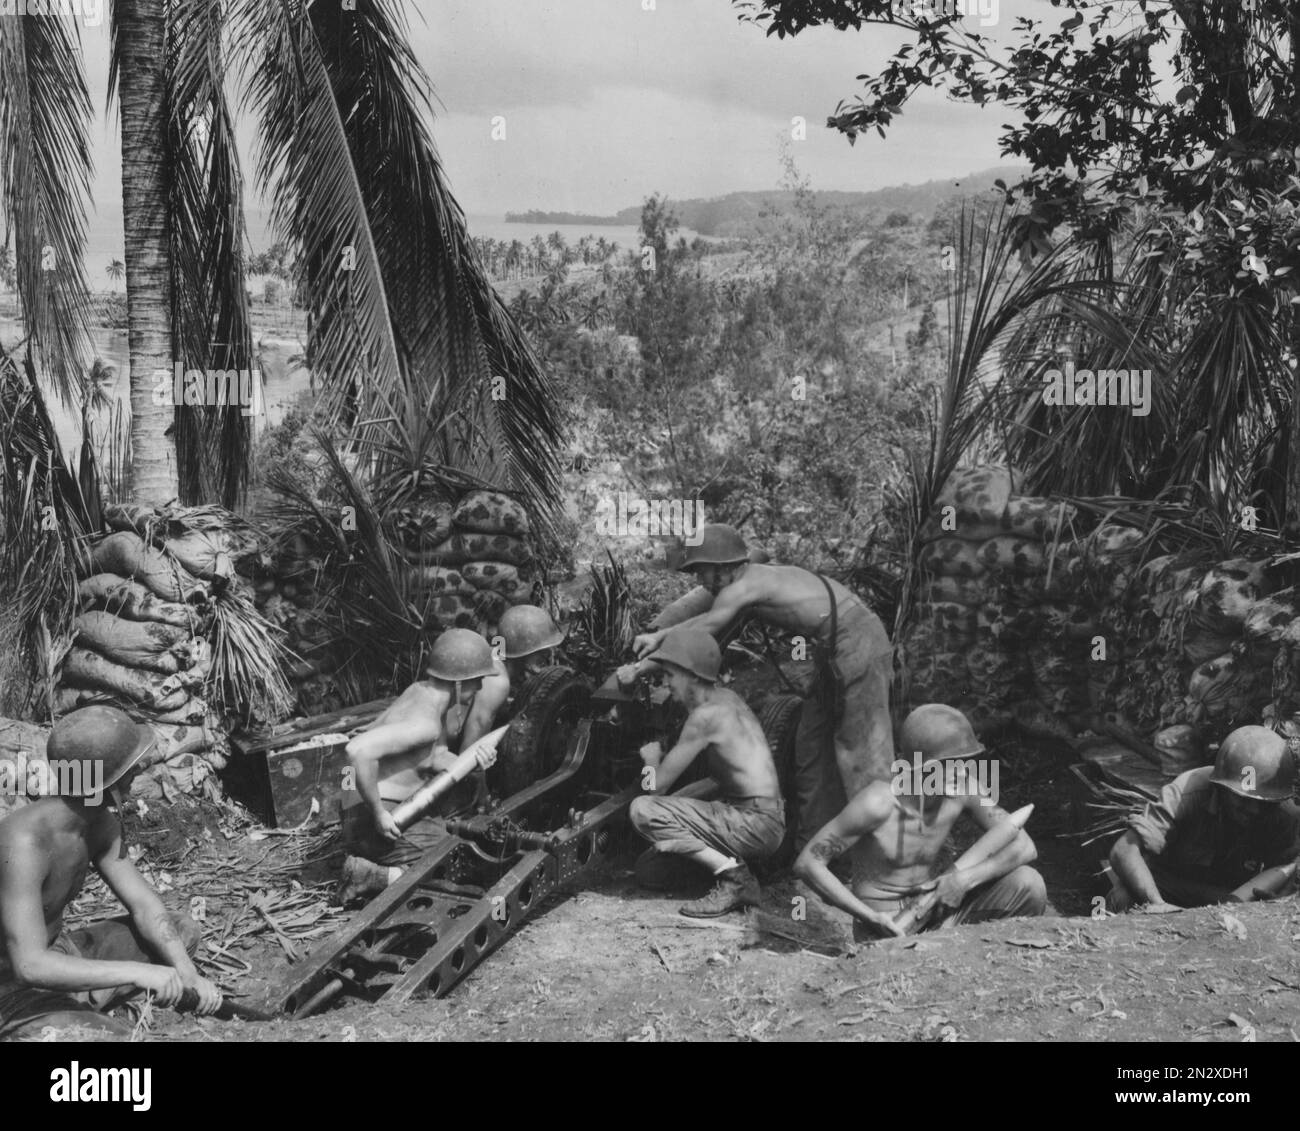 GUADALCANAL, ÎLES SALOMON - vers 1942-1943 - les Marines des États-Unis utilisent un canon d'artillerie de Howitzer de 75mm unités pendant la bataille de Guadalcanal dans l'Isl Salomon Banque D'Images